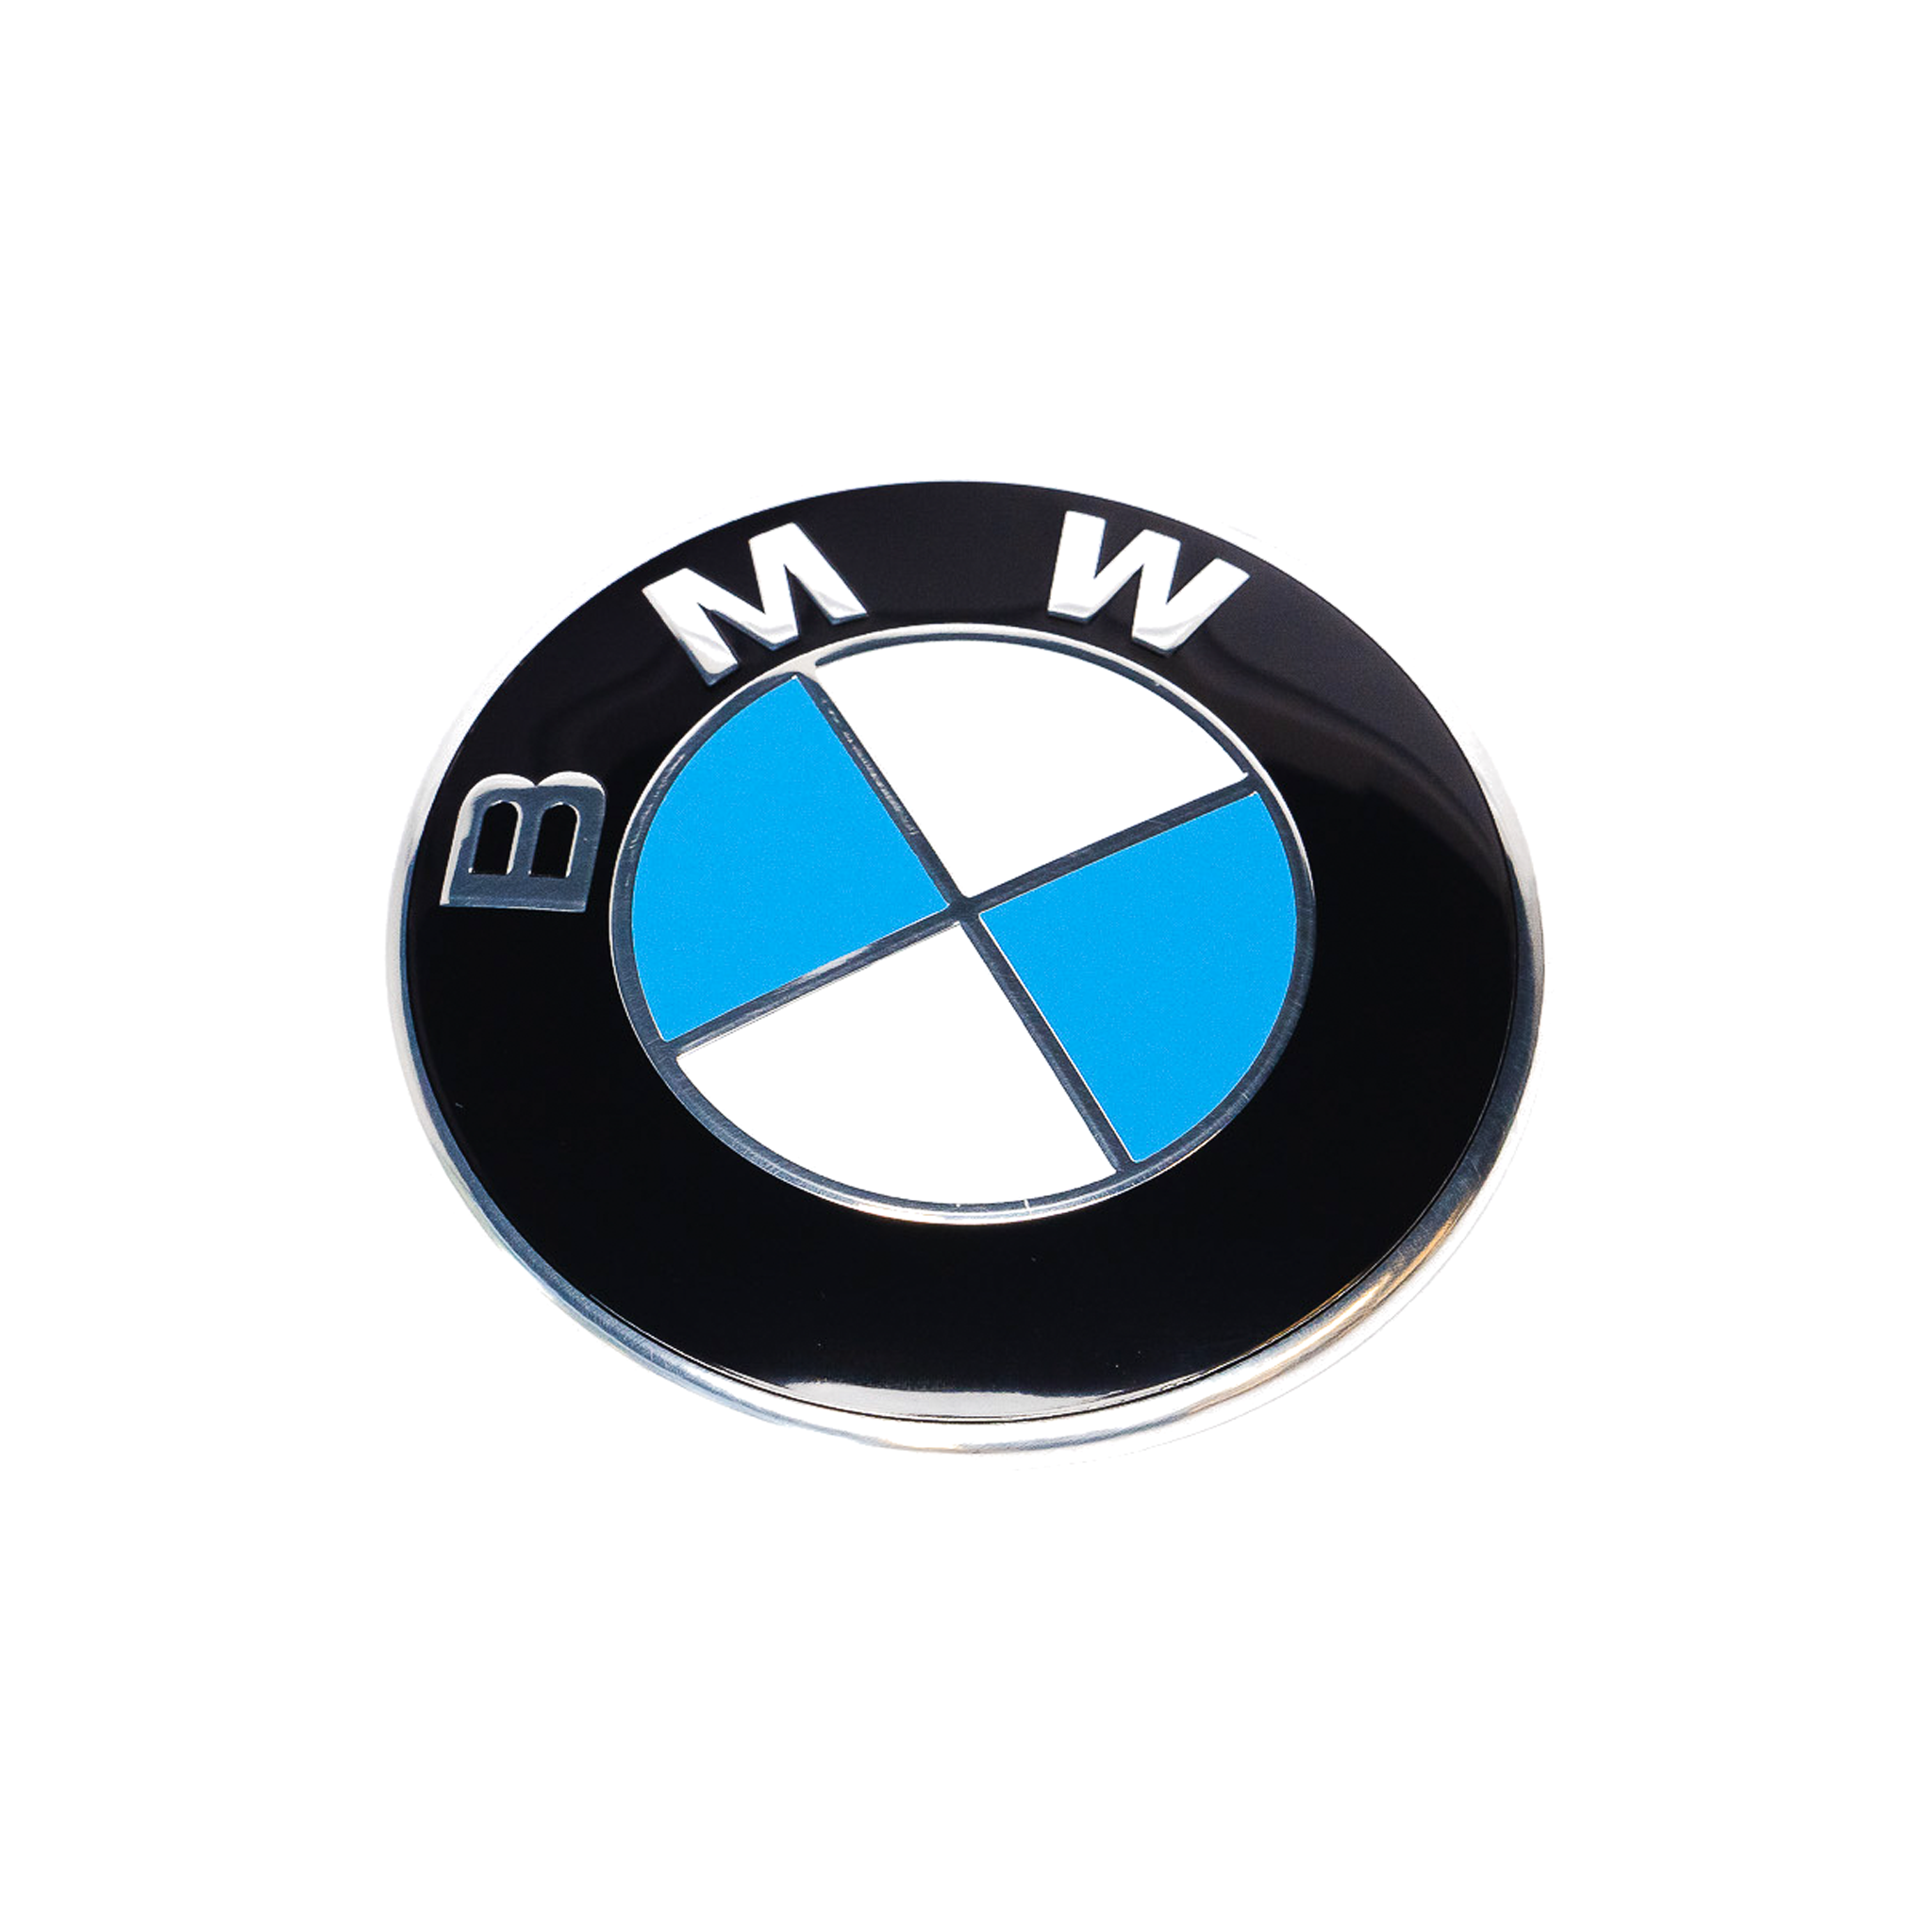 Exon BMW estilo azul/blanco insignia frontal emblema para BMW F-Series M2 F87 M3 F80 M4 F82 M5 F10 M6 F12 F13 y 1 2 3 4 5 6 Series F20 F22 F30 F32